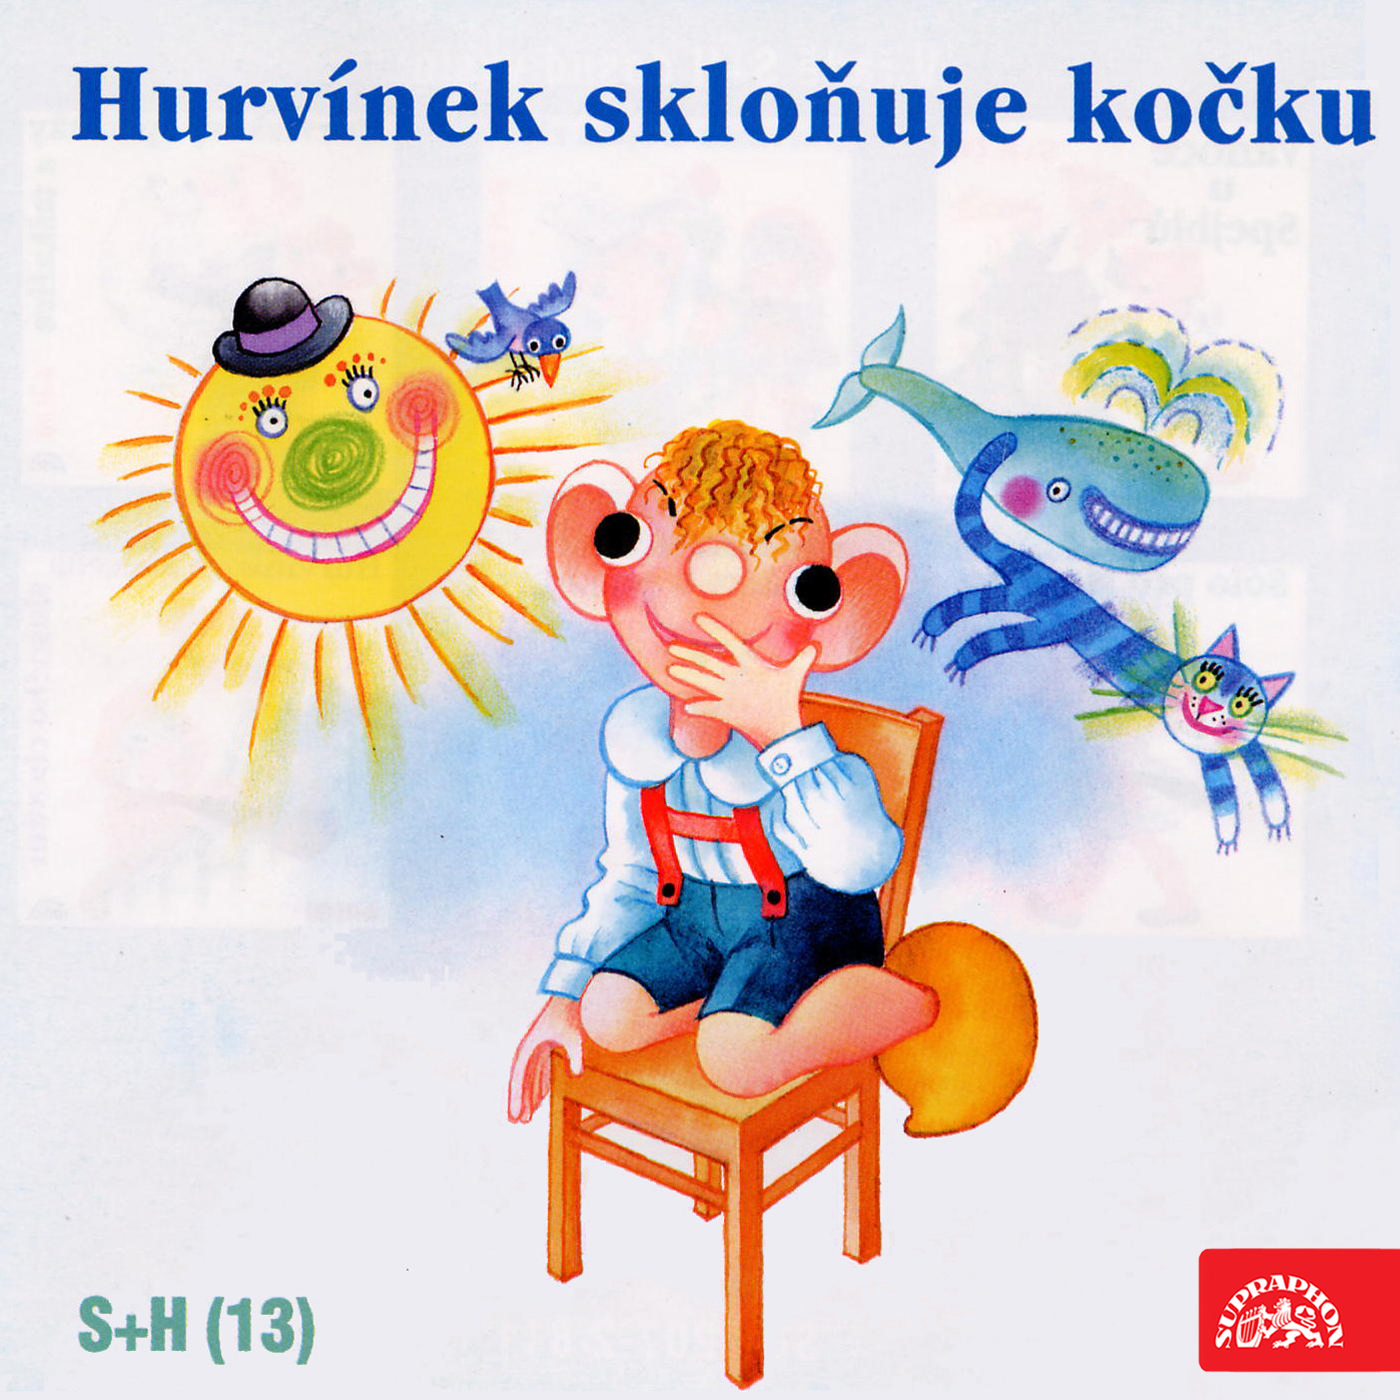 CD Shop - S+H HURVINEK SKLONUJE KOCKU (13)